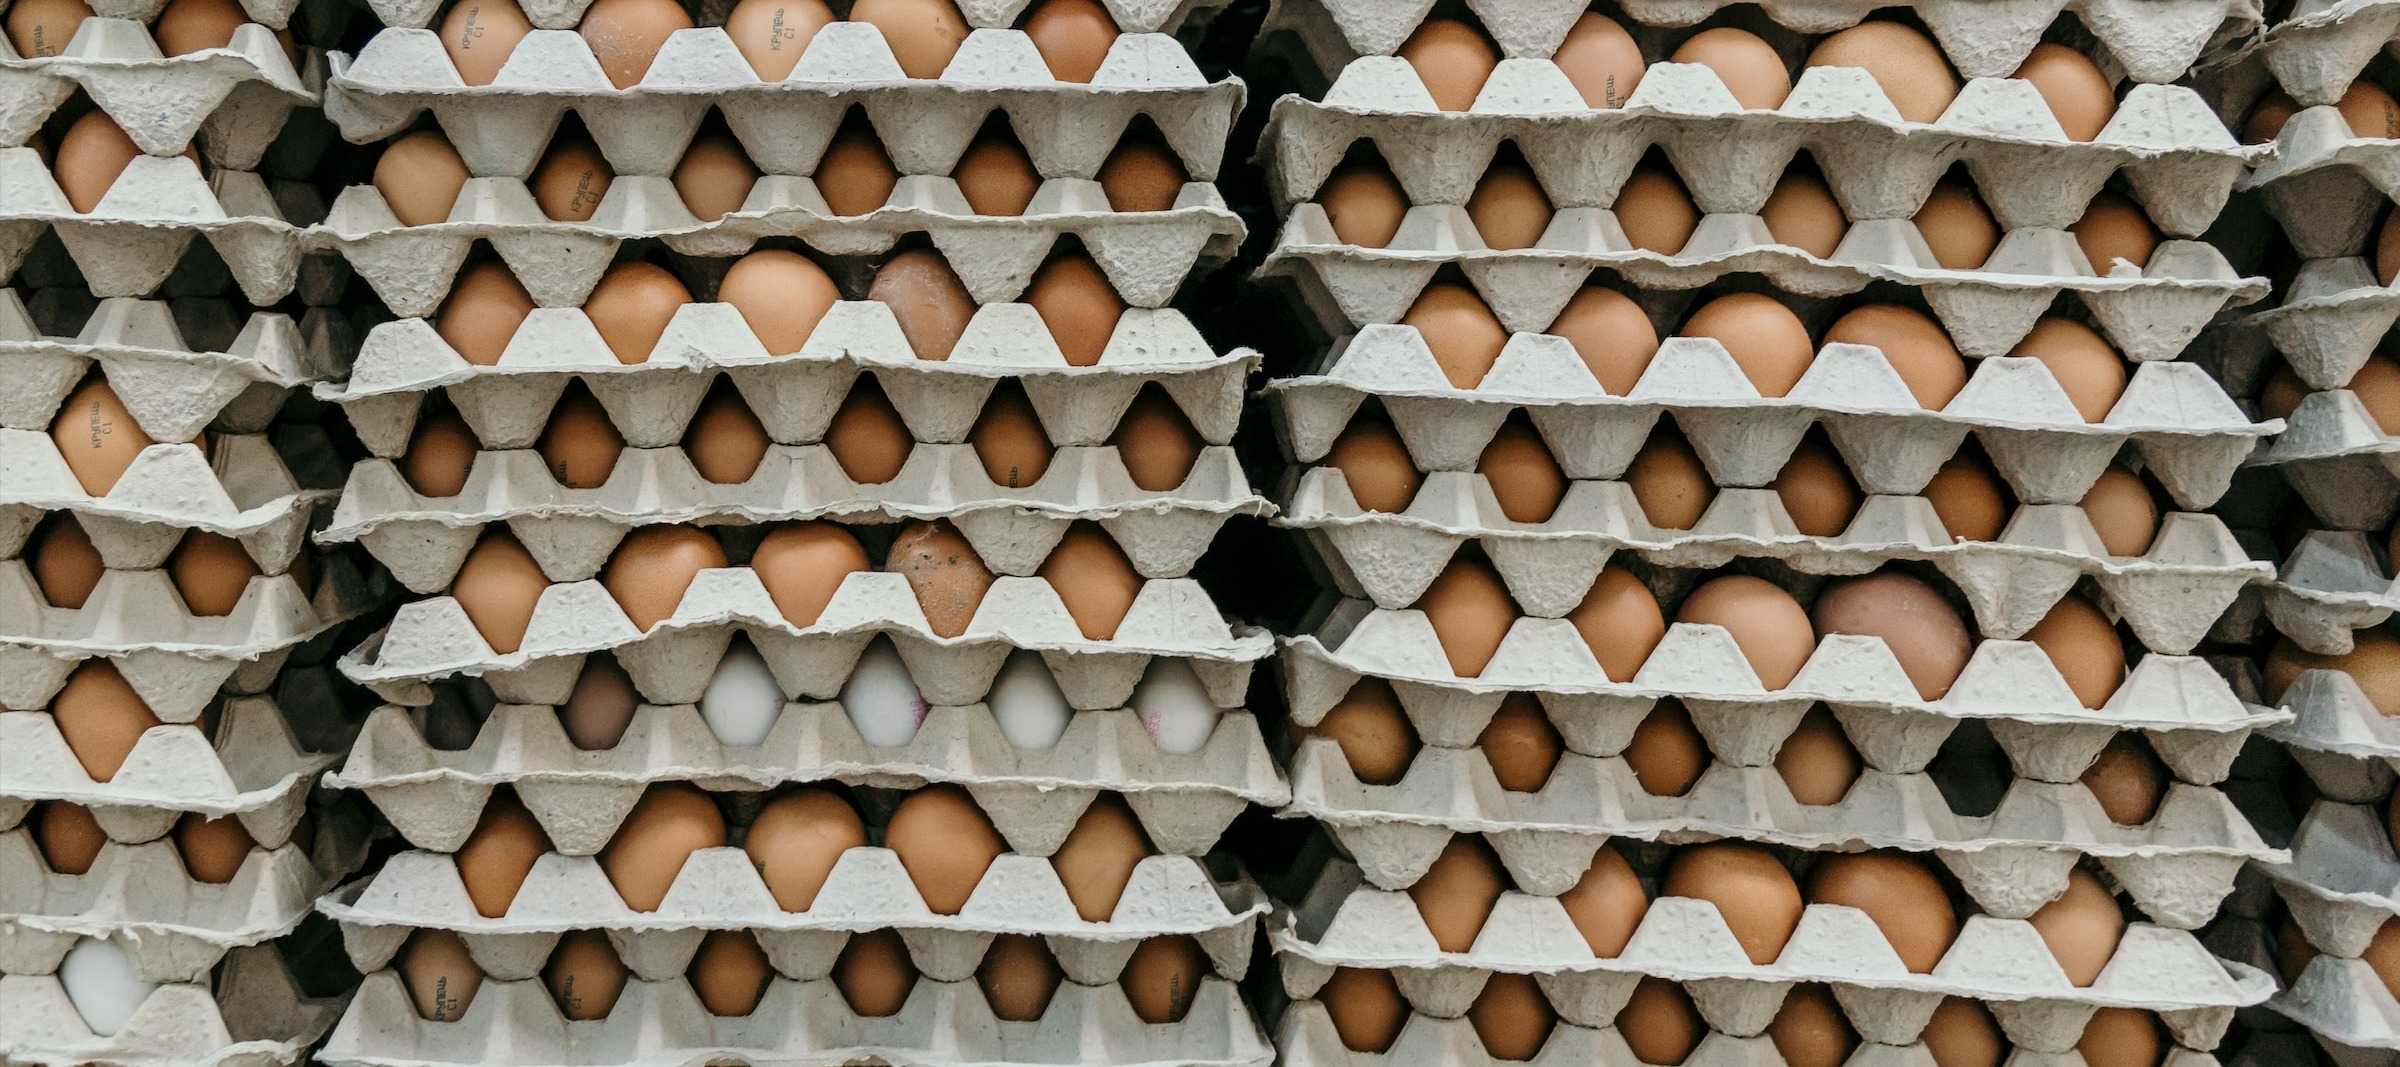 Фото новости: "На челябинской птицефабрике роботы будут укладывать коробки с яйцами"